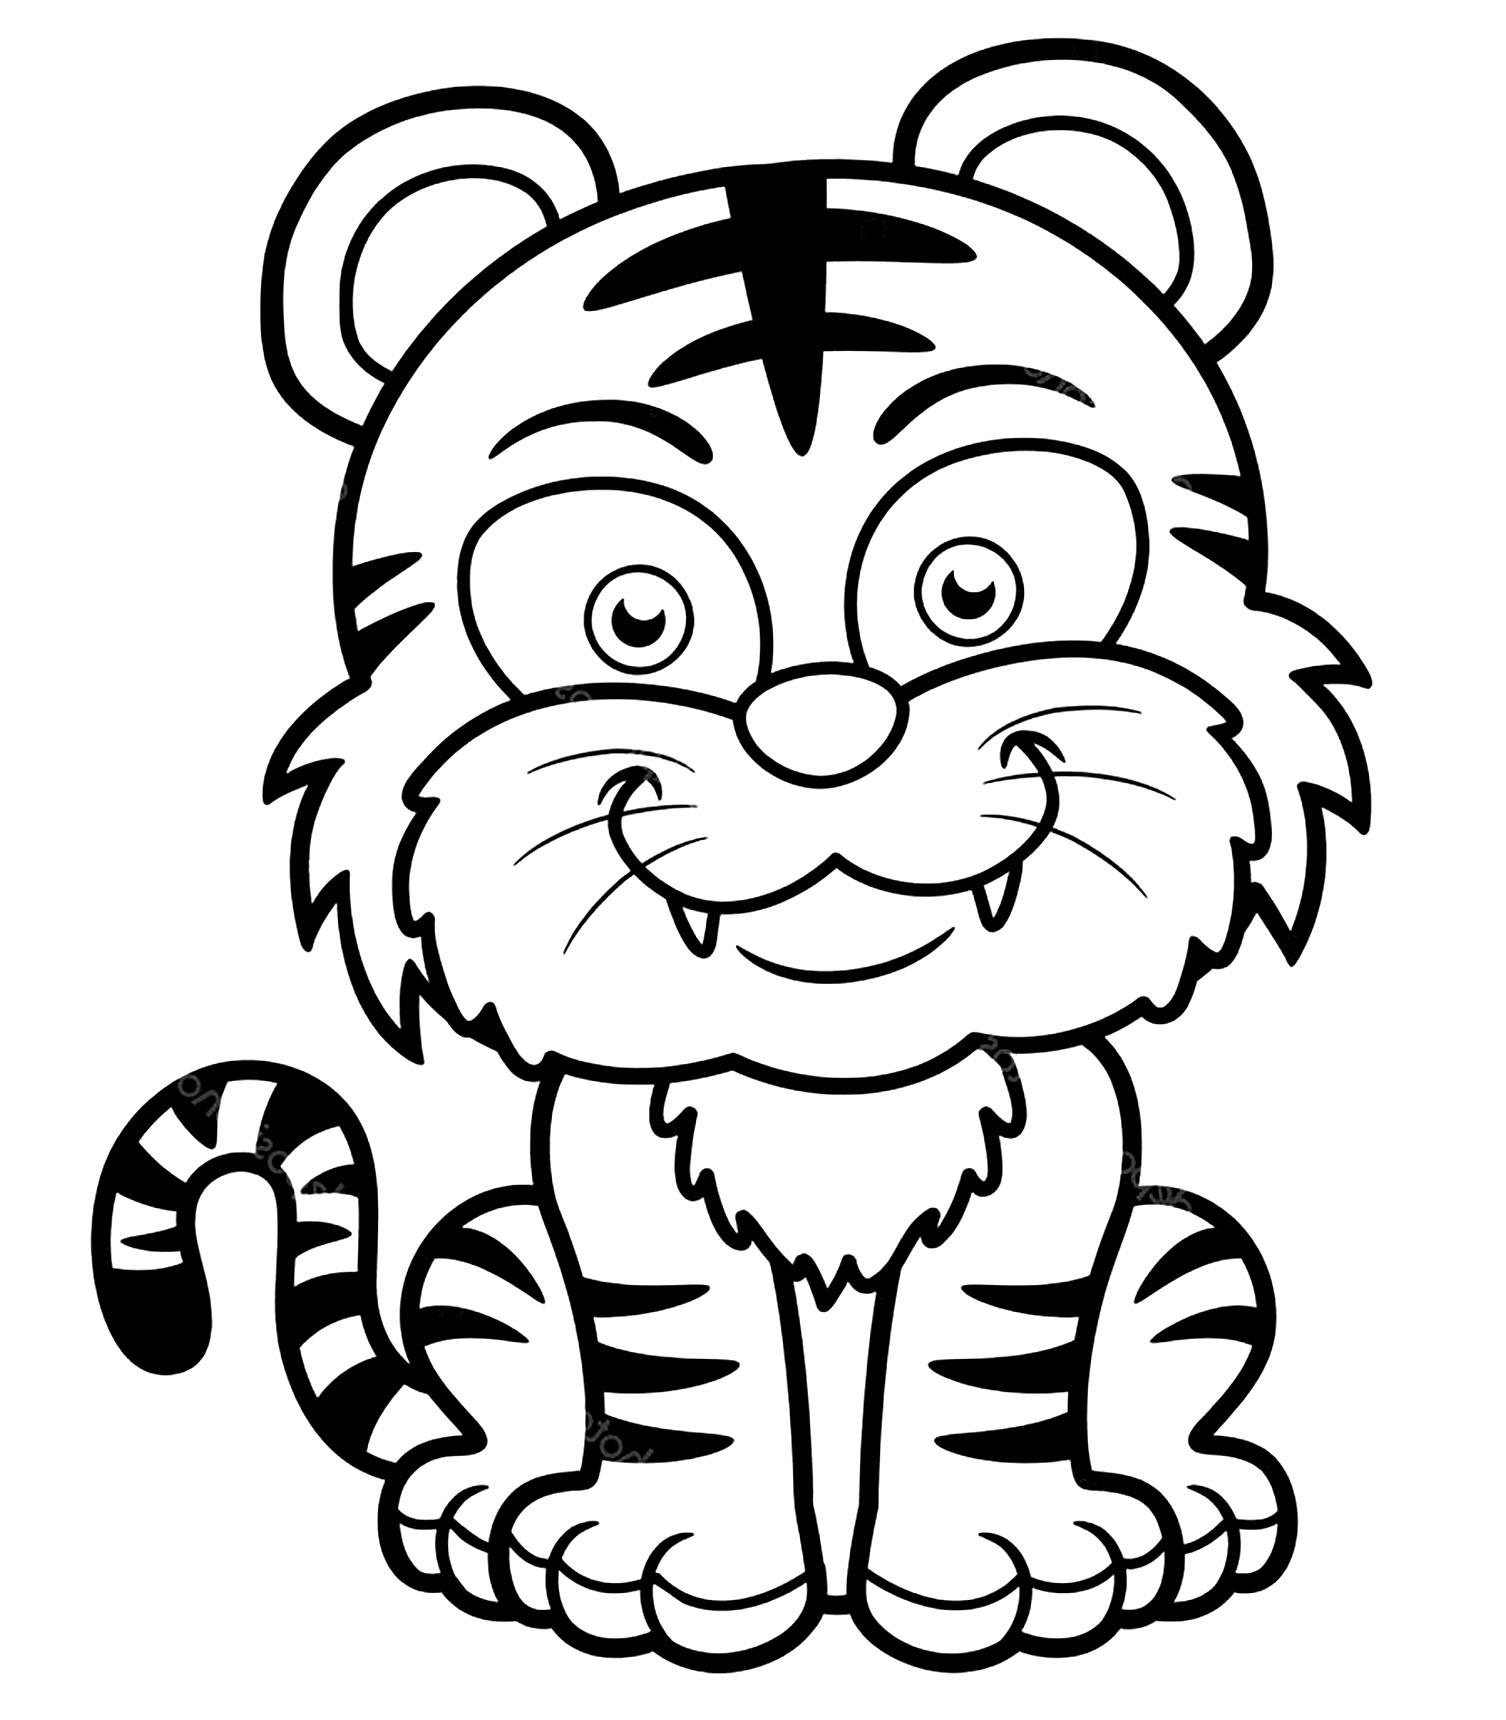 Dibujo de tigre fácil de colorear para niños